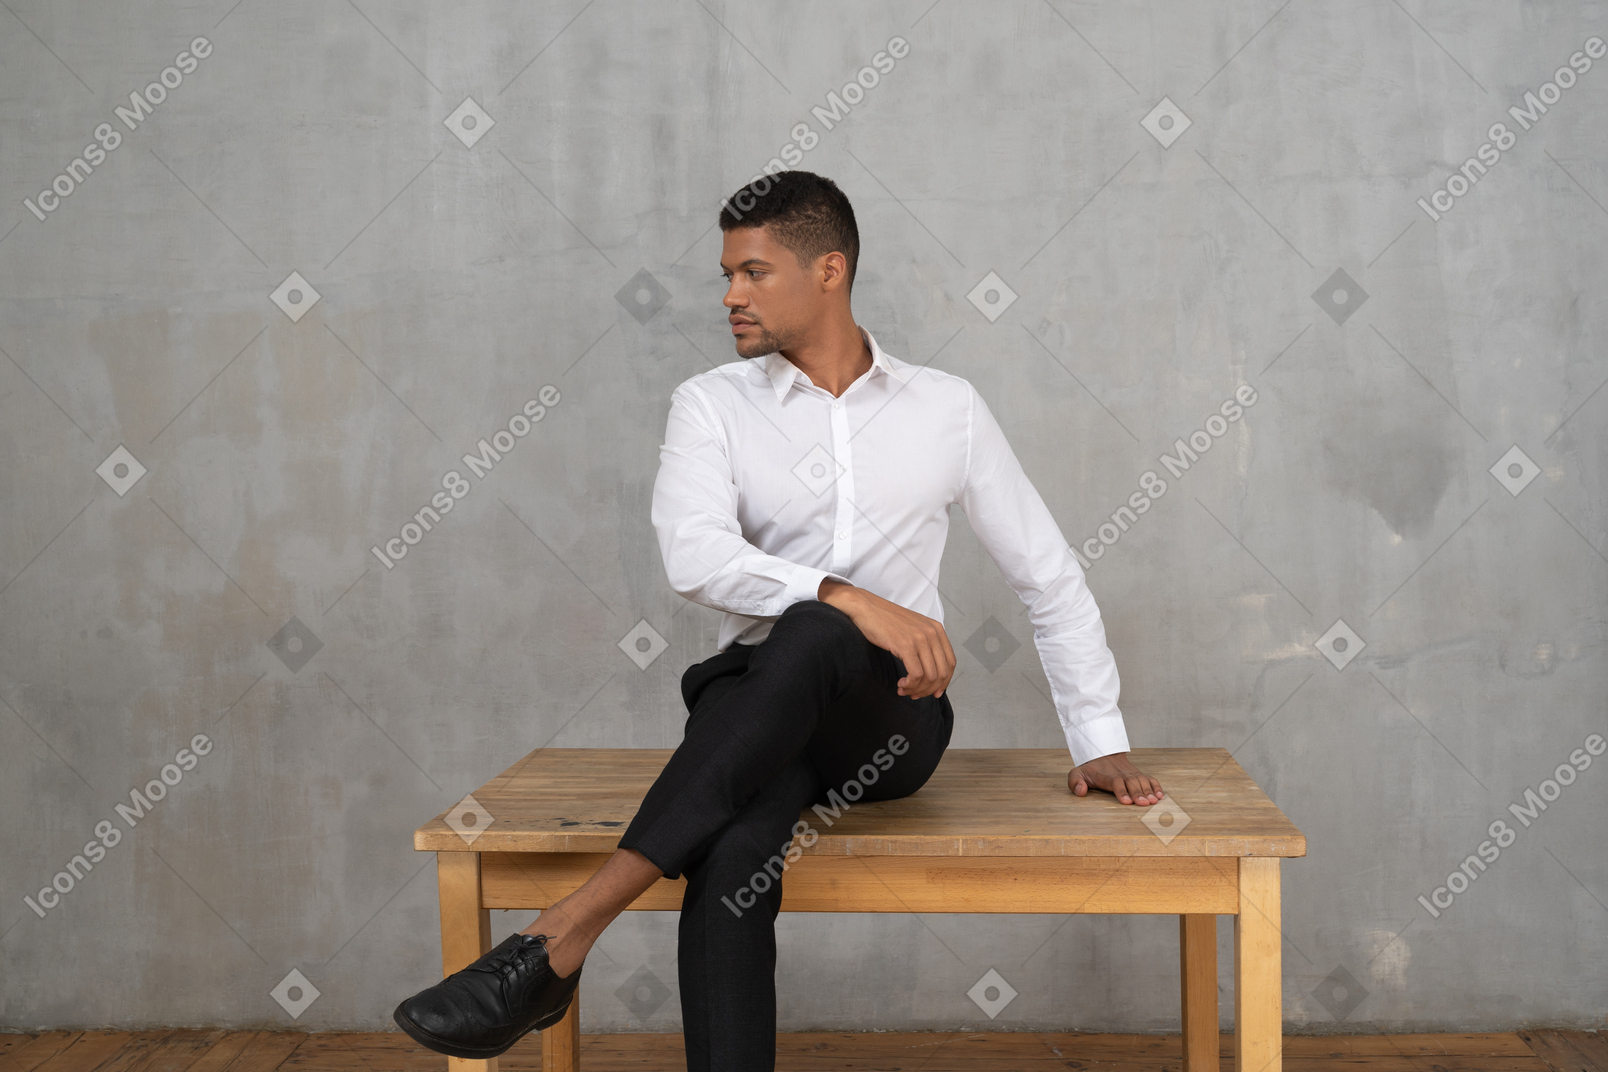 Homme bien habillé assis sur une table avec la tête tournée